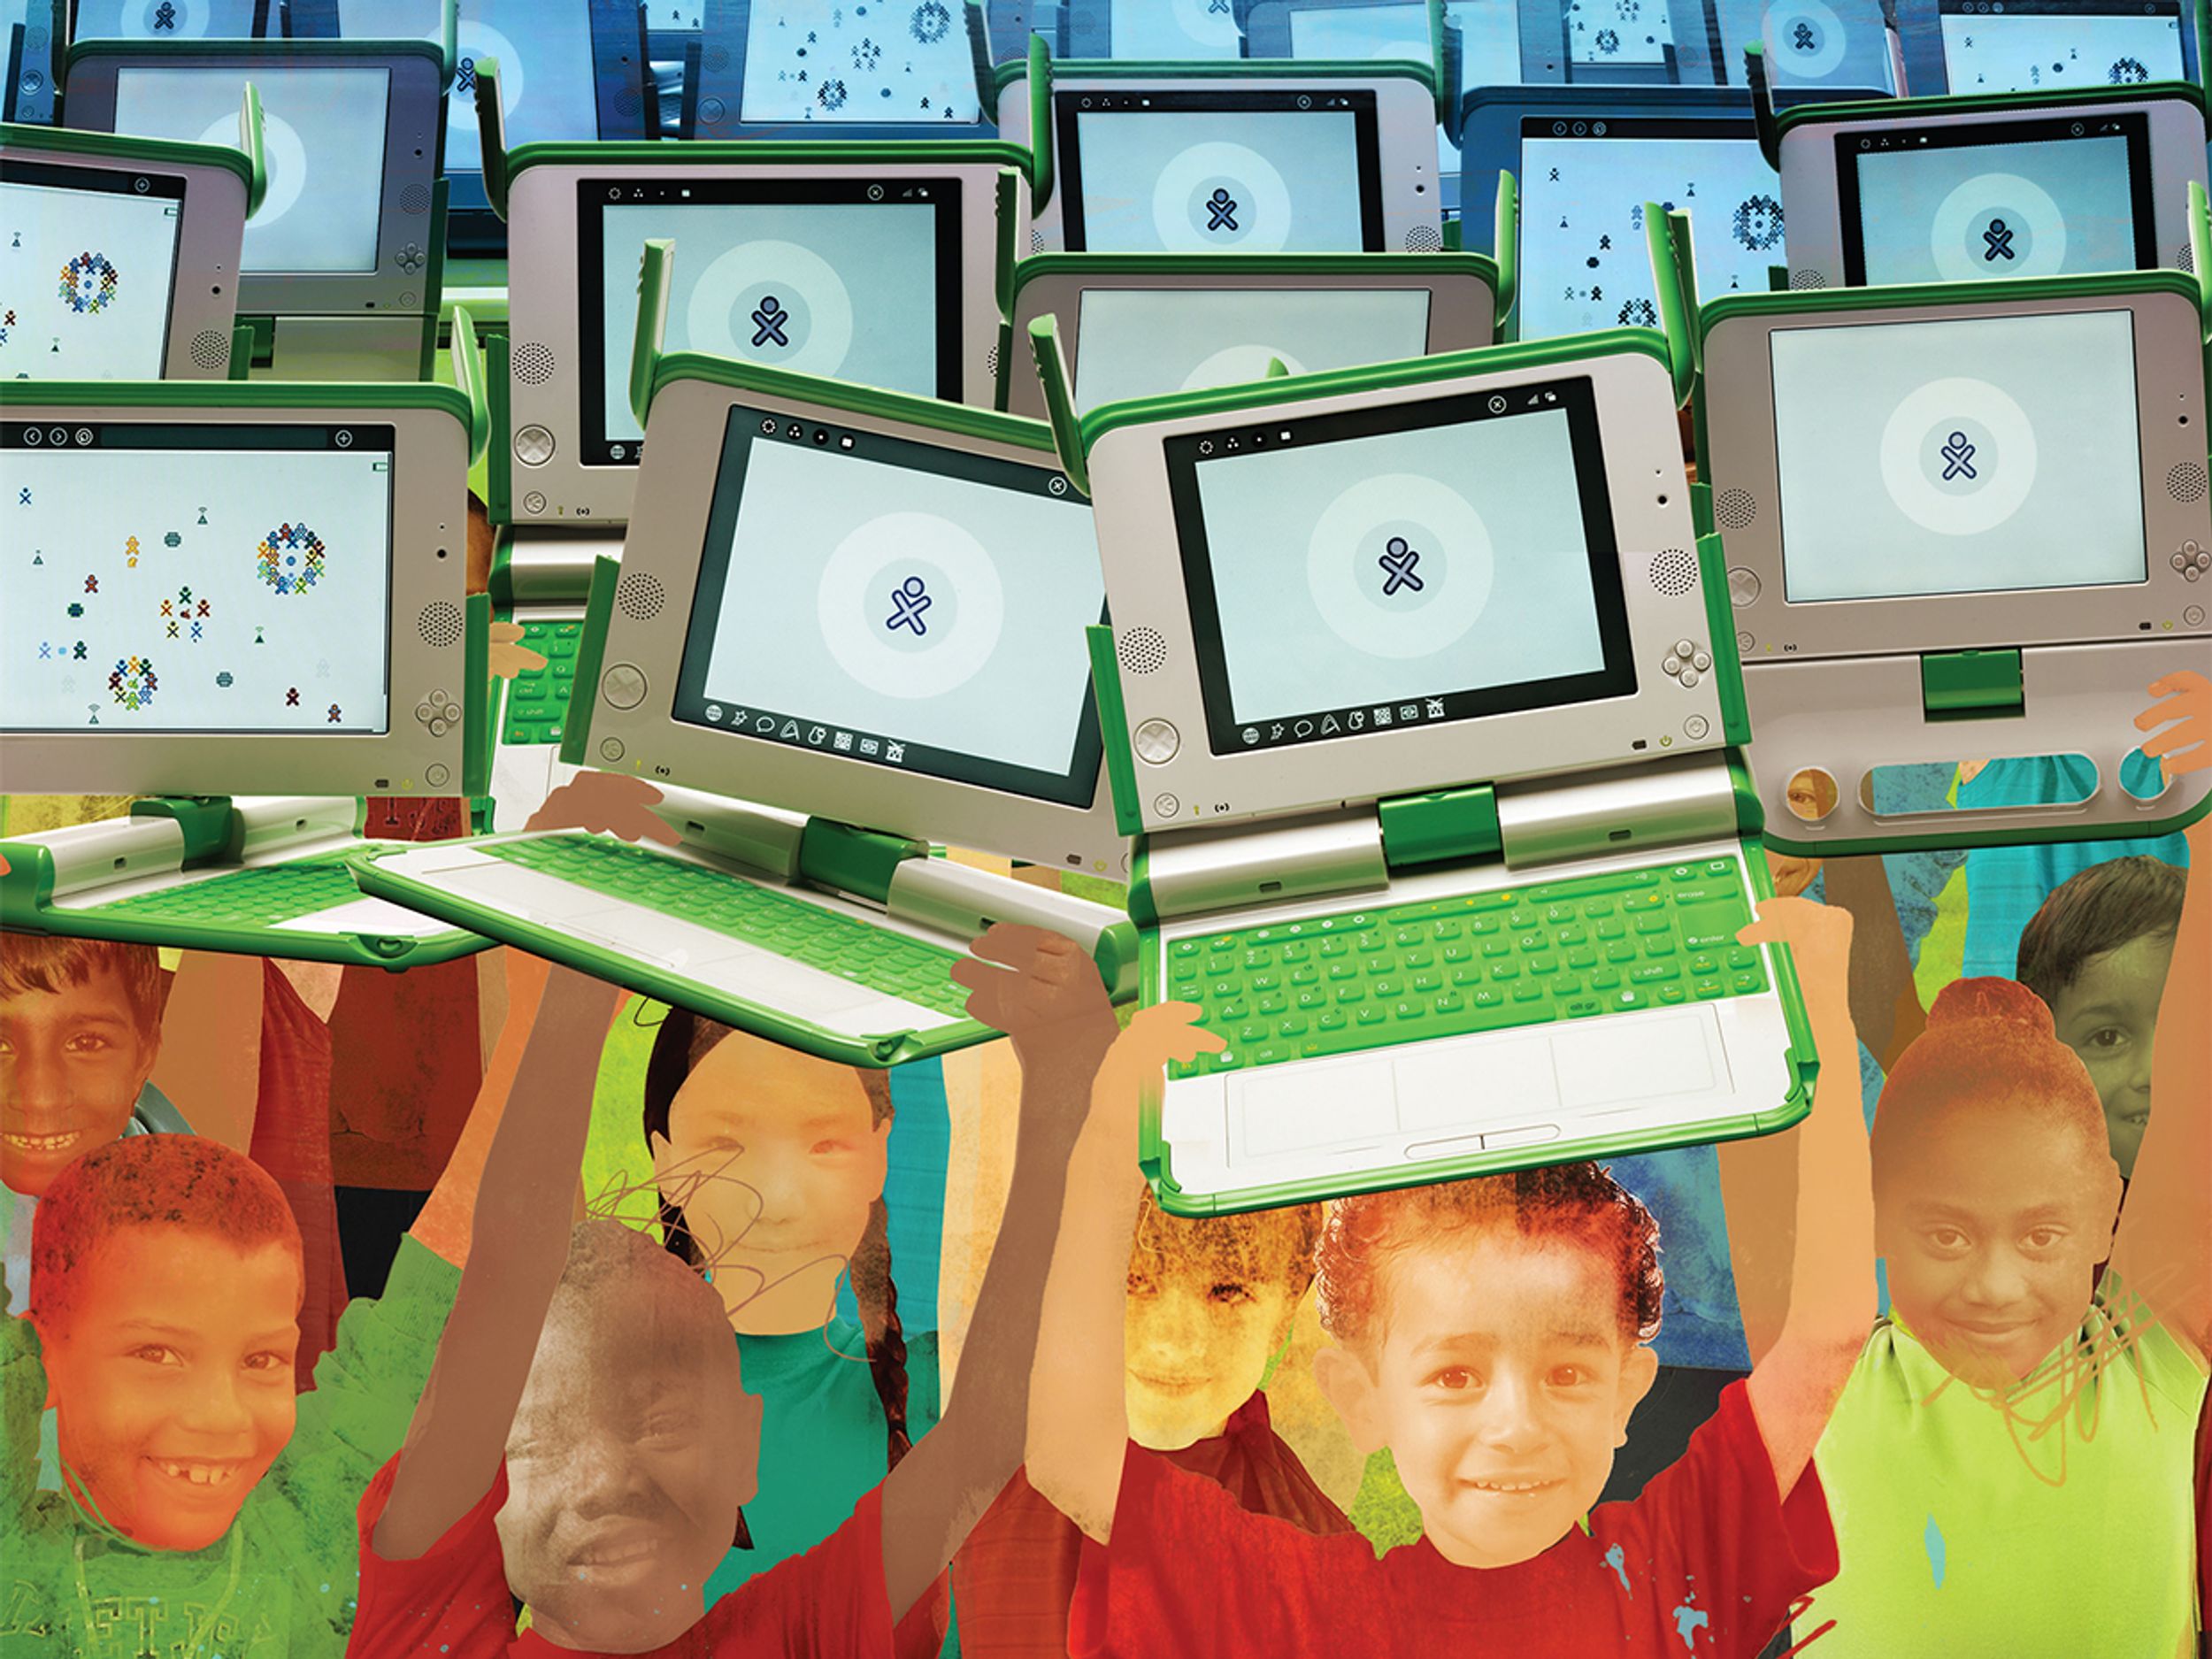 Illustration of children holding up laptops under a blue sky